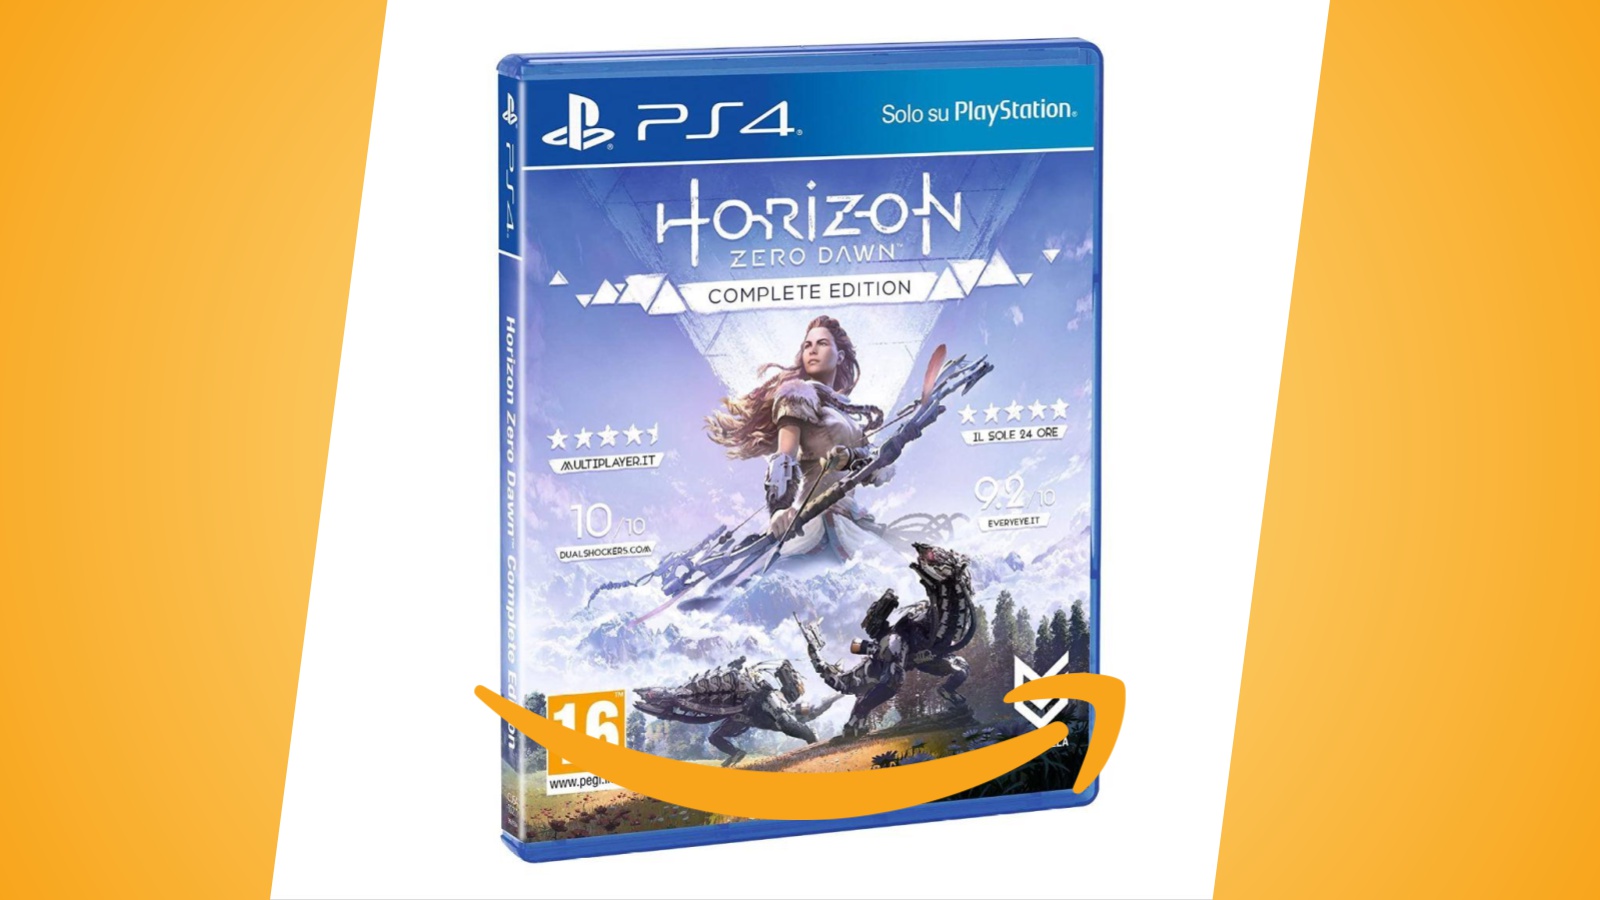 Offerte Amazon: Horizon Zero Dawn Complete Edition per PS4 in sconto al prezzo più basso da anni